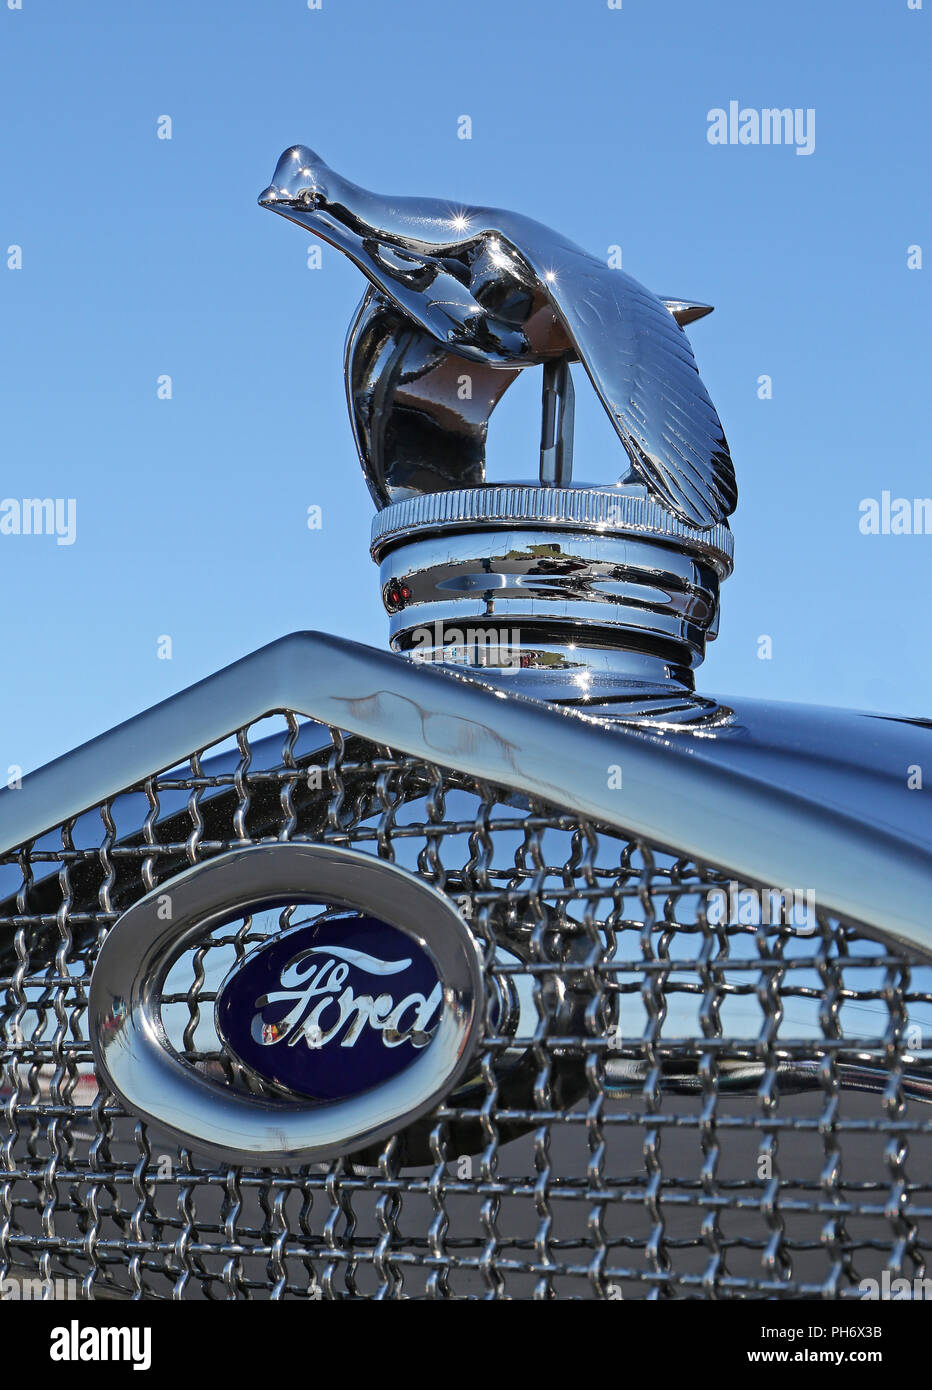 CONCORD, NC - 8 Avril 2017 : une Ford 1930 ornement de capot sur l'affichage à l'Pennzoil AutoFair classic car show s'est tenue à Charlotte Motor Speedway. Banque D'Images